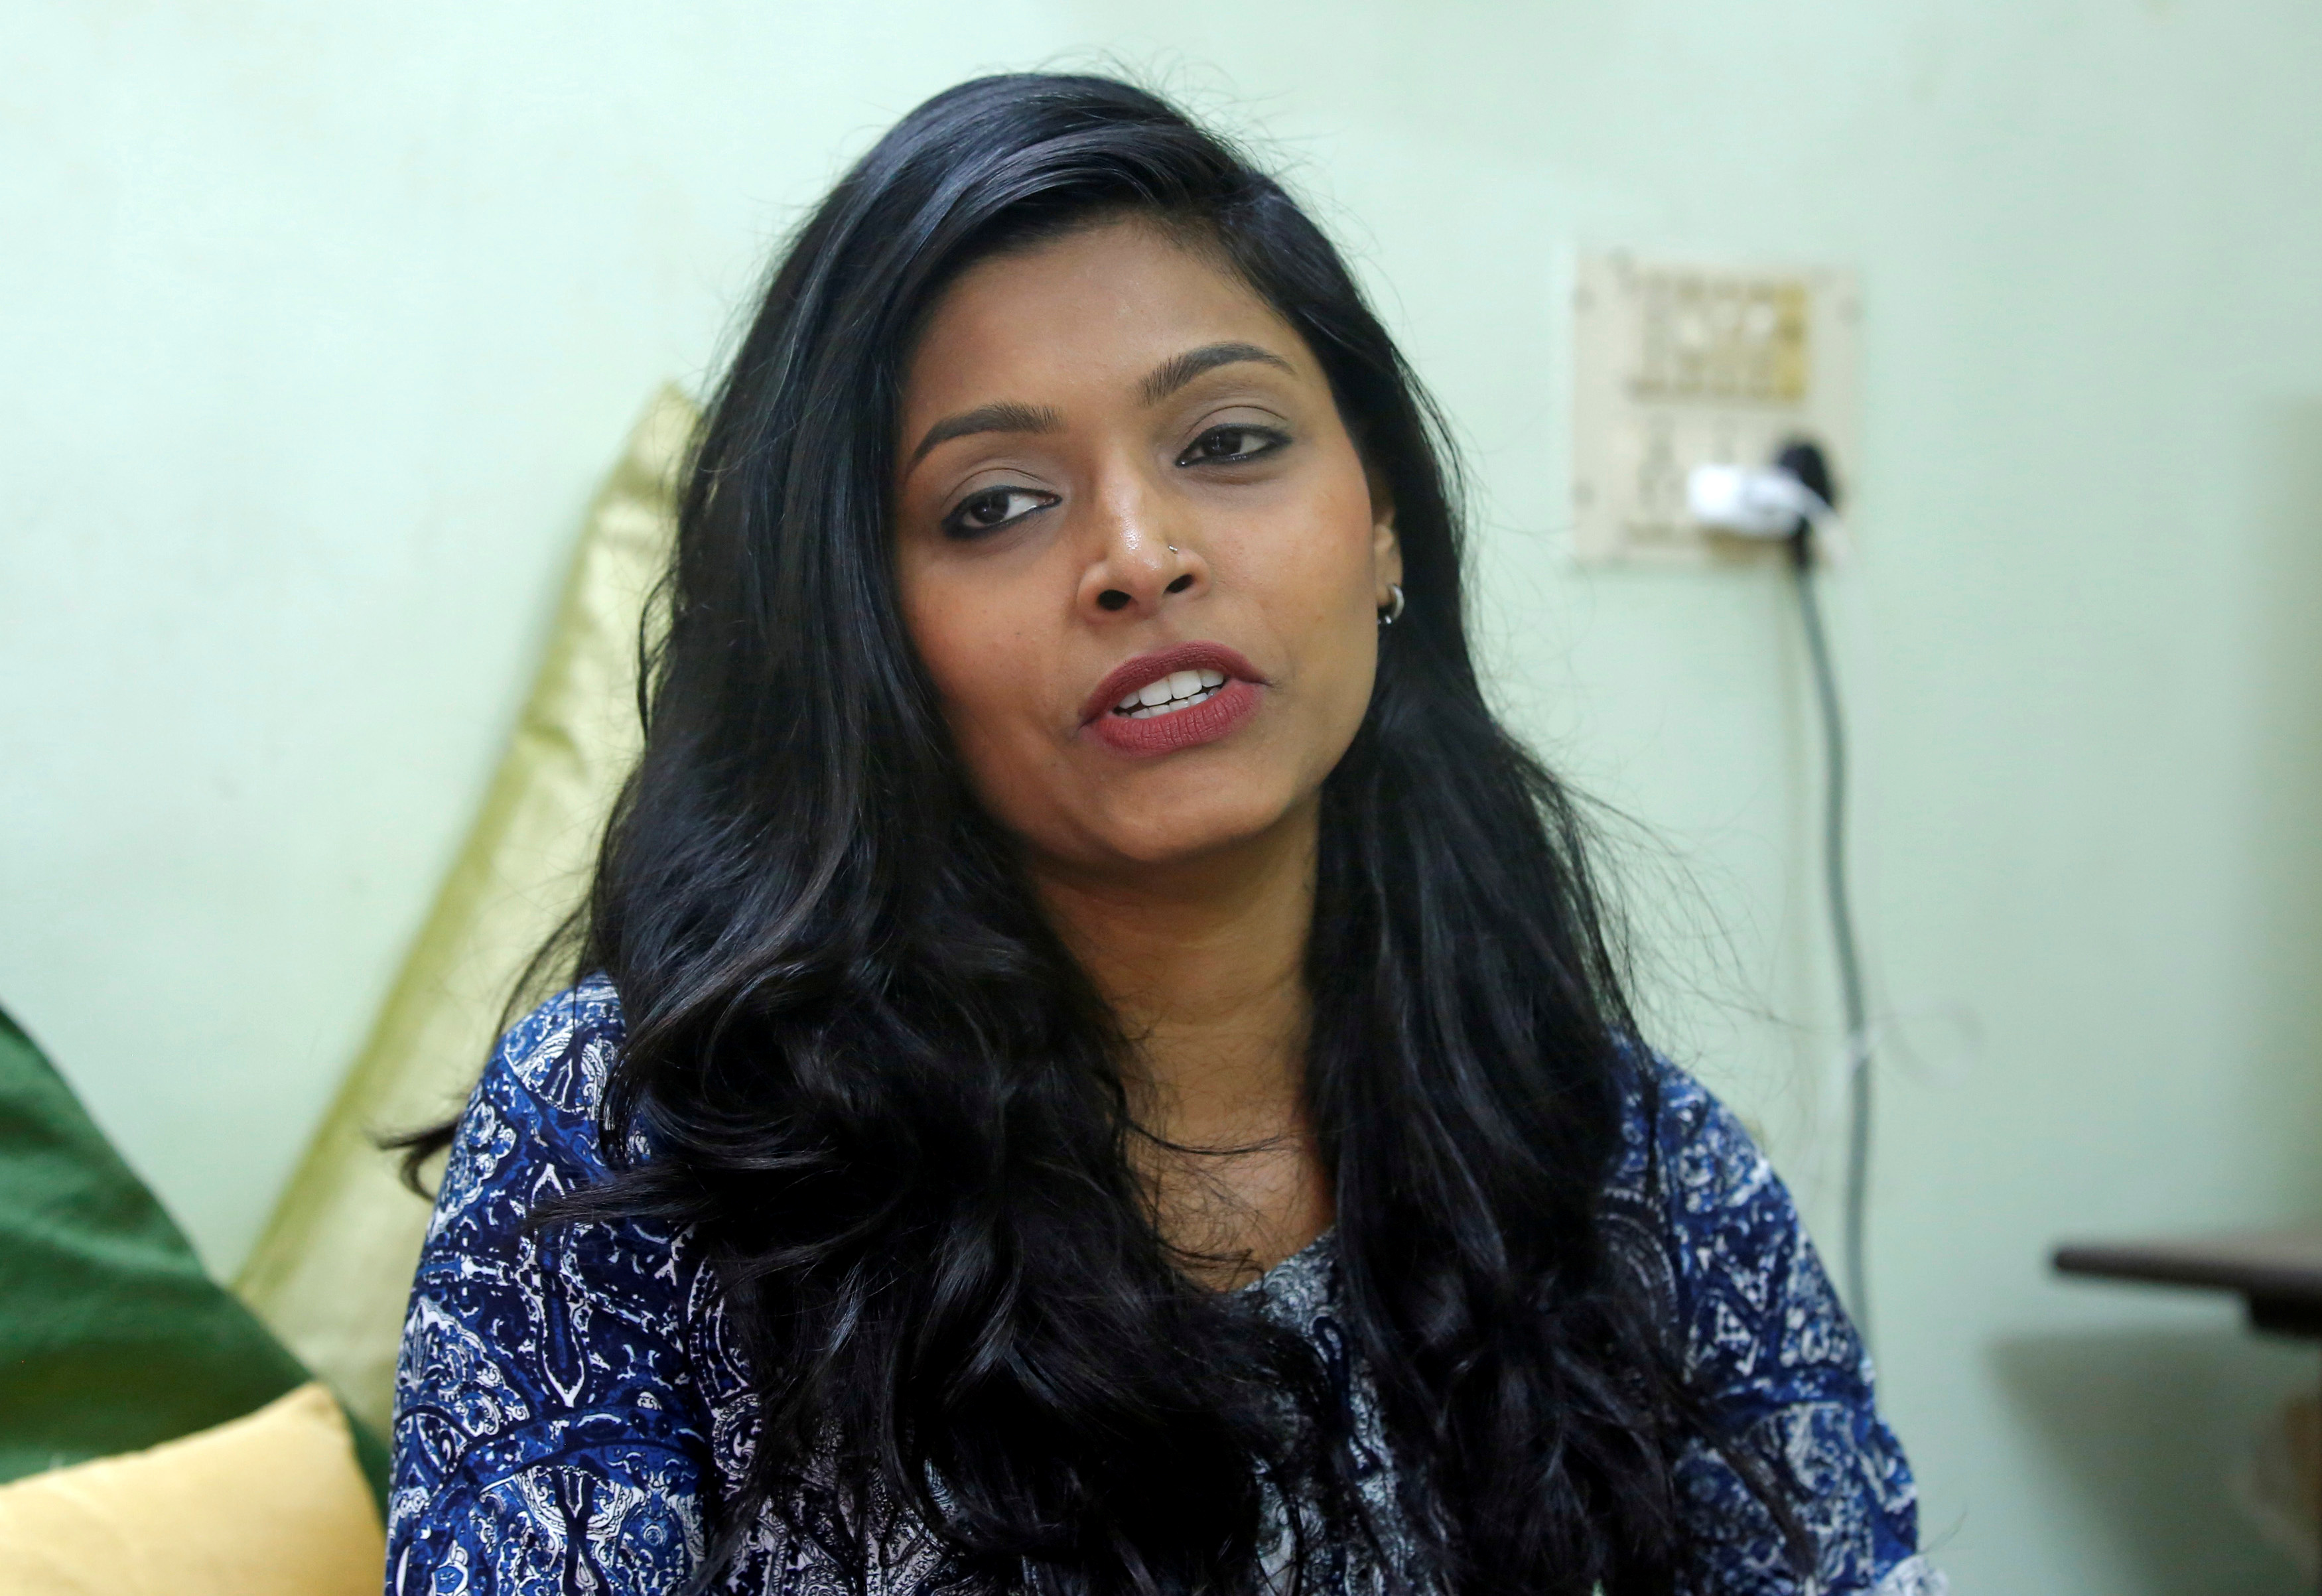 Actor Divya Unny speaks inside her residence in Mumbai